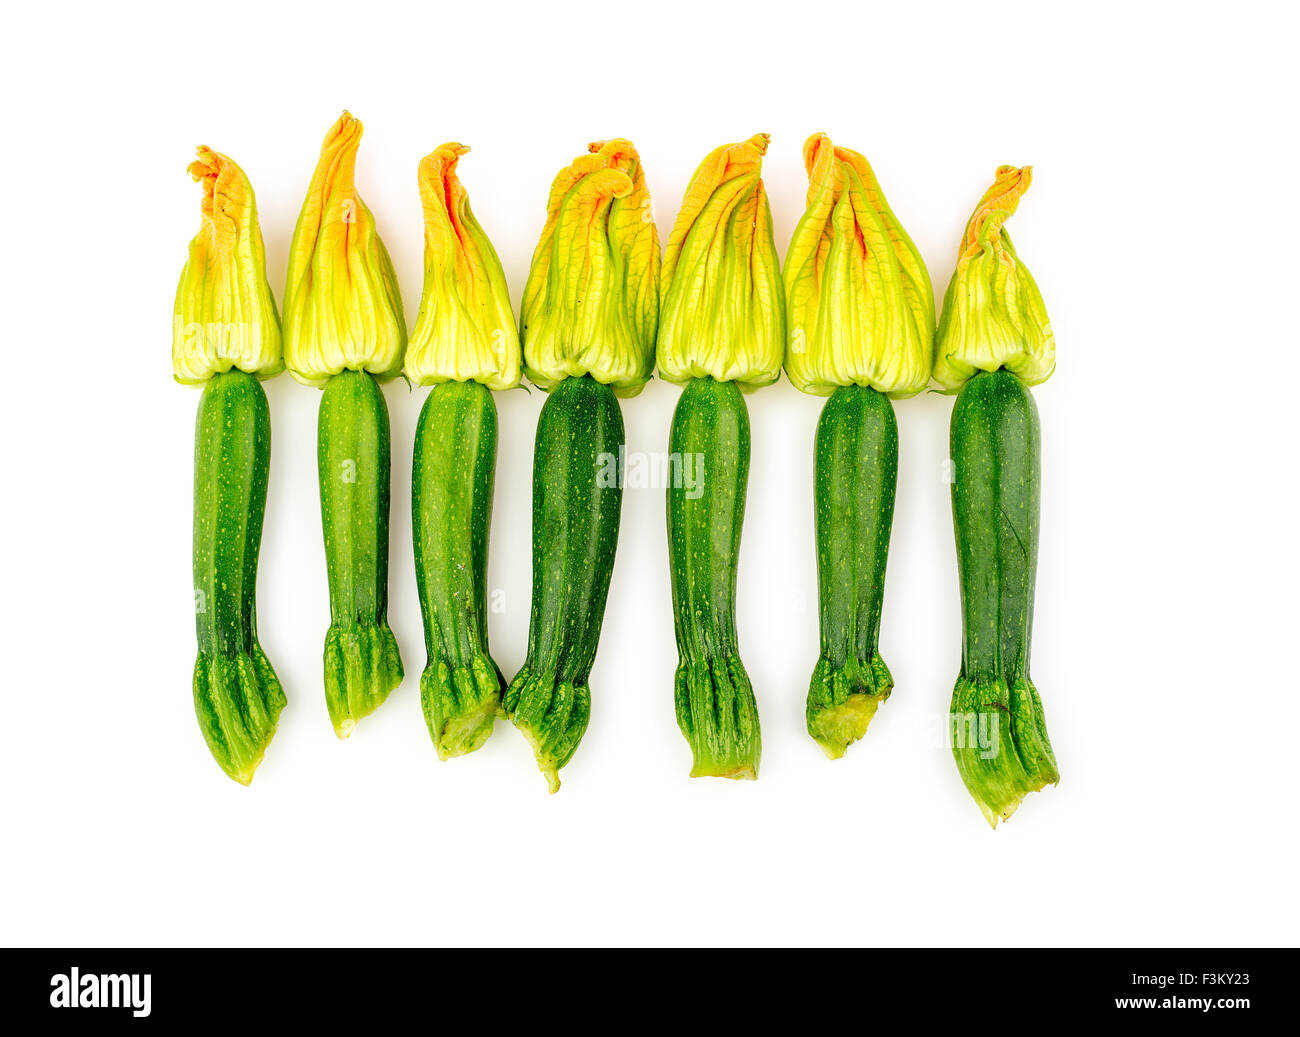 Group of zucchini flowers studio top shot Stock Photo